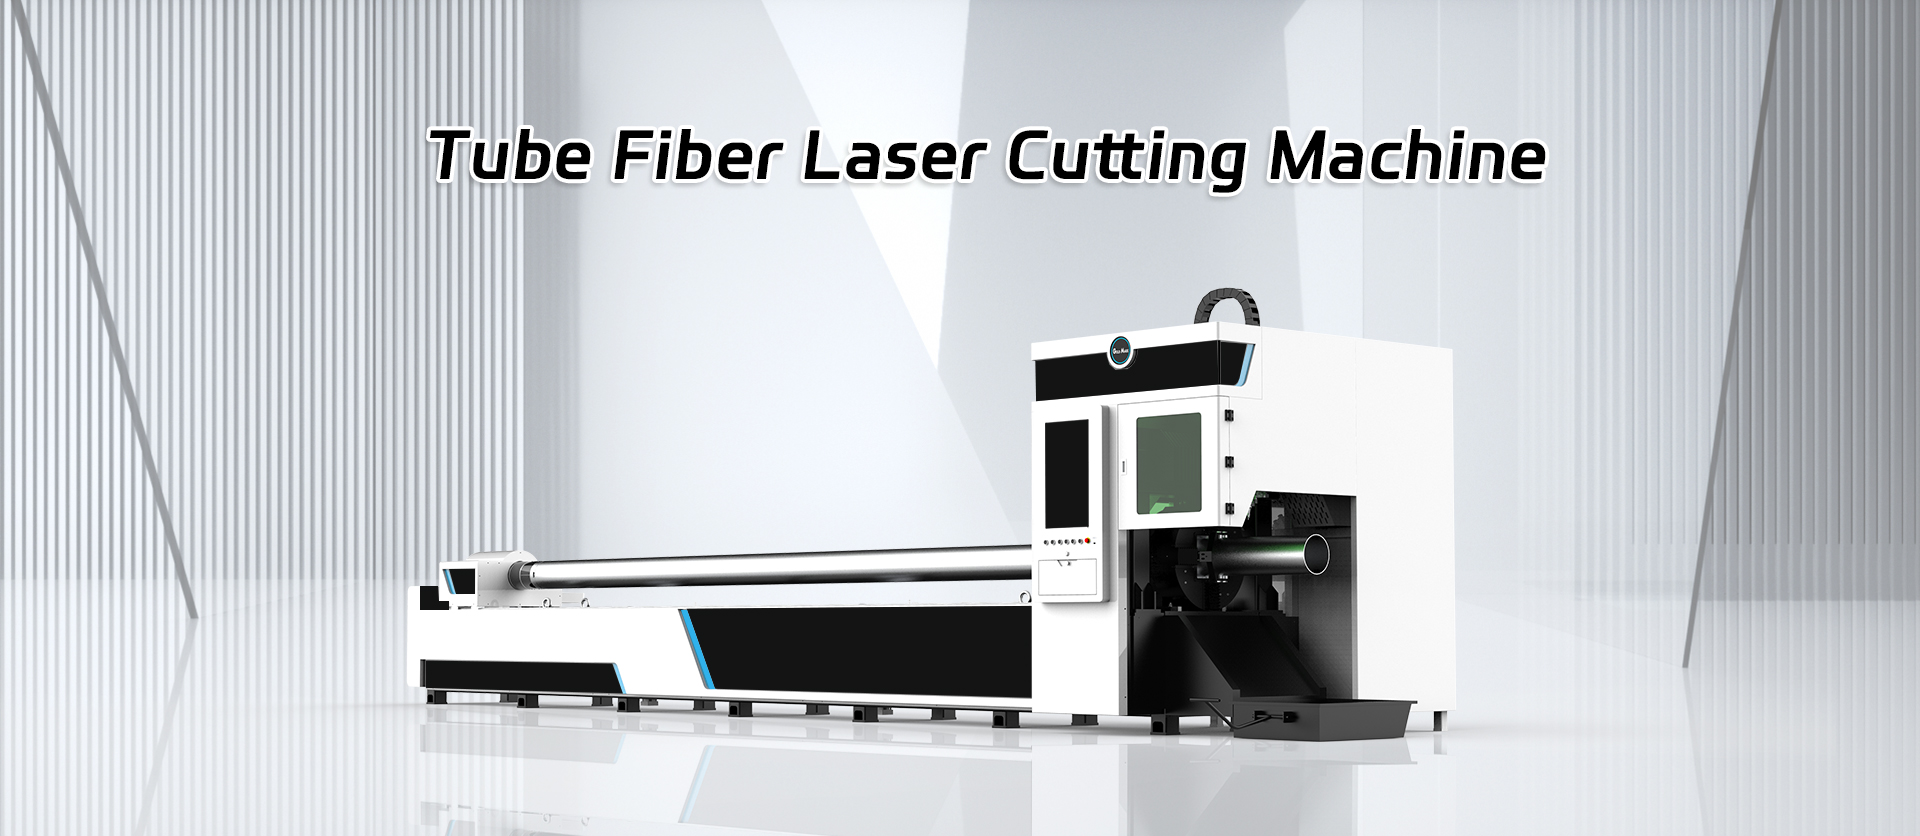 Tube Fiber Laser Cutting Machine